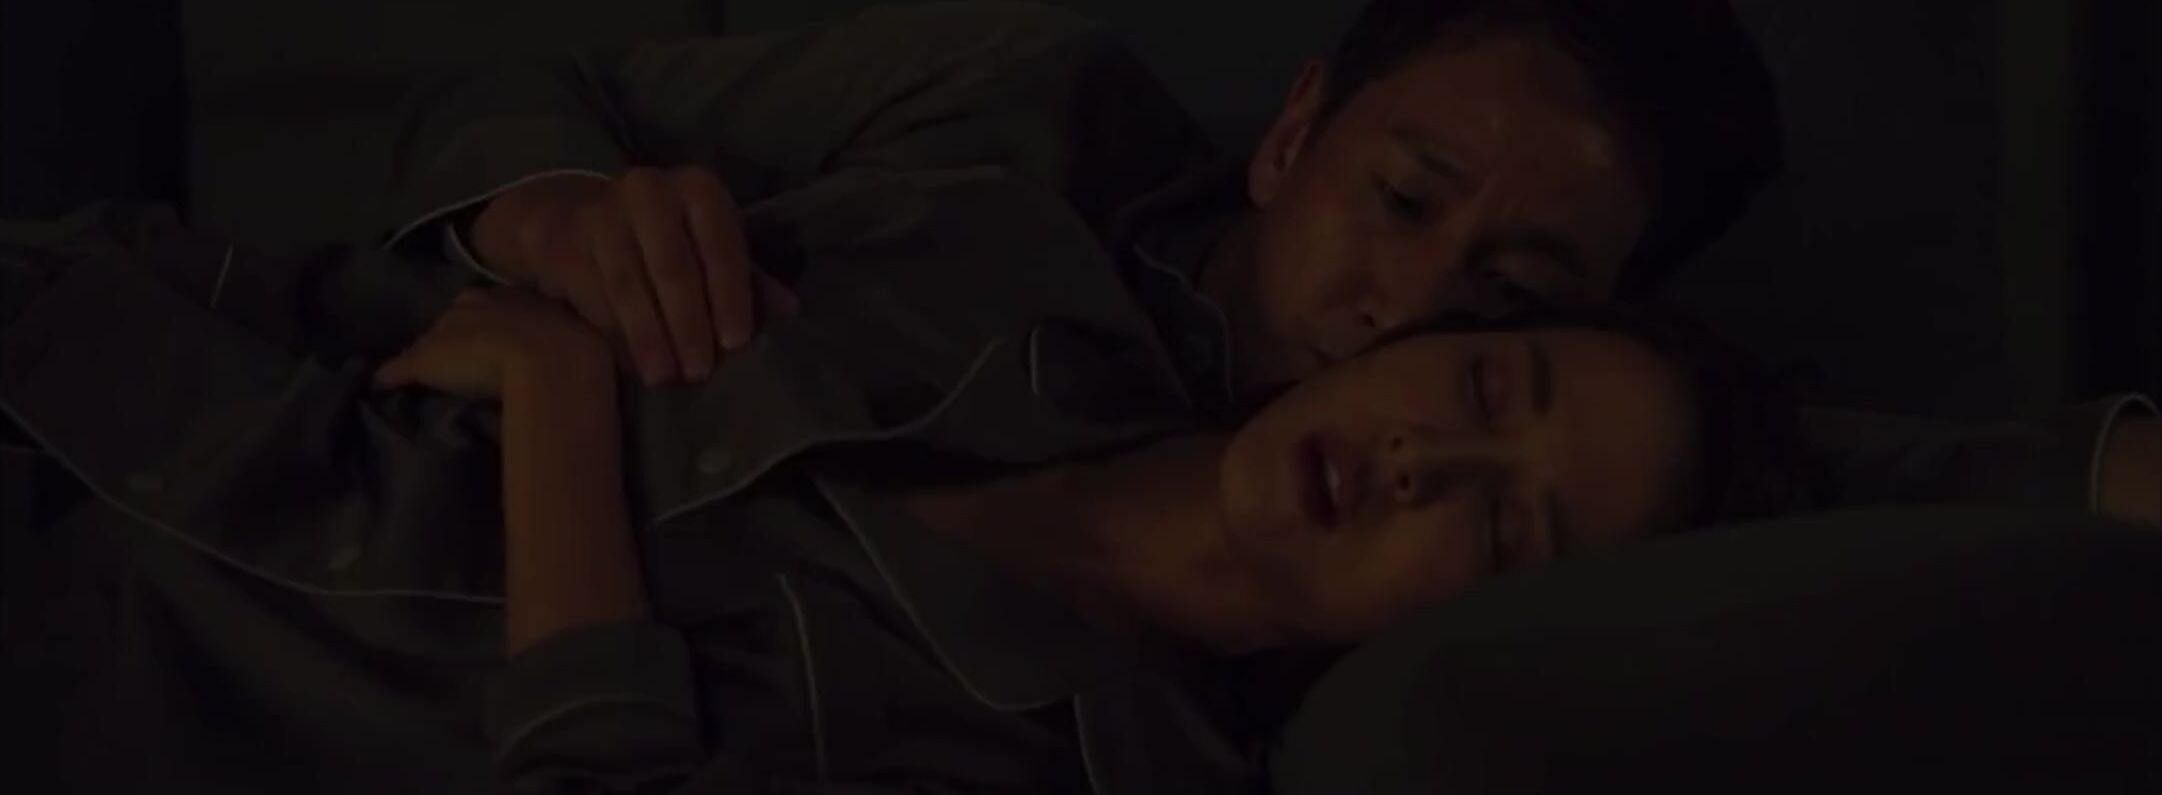 Creamy Korean movie Parasite mutual masturbation explicit moment with Jo Yeo-jeong Doggy